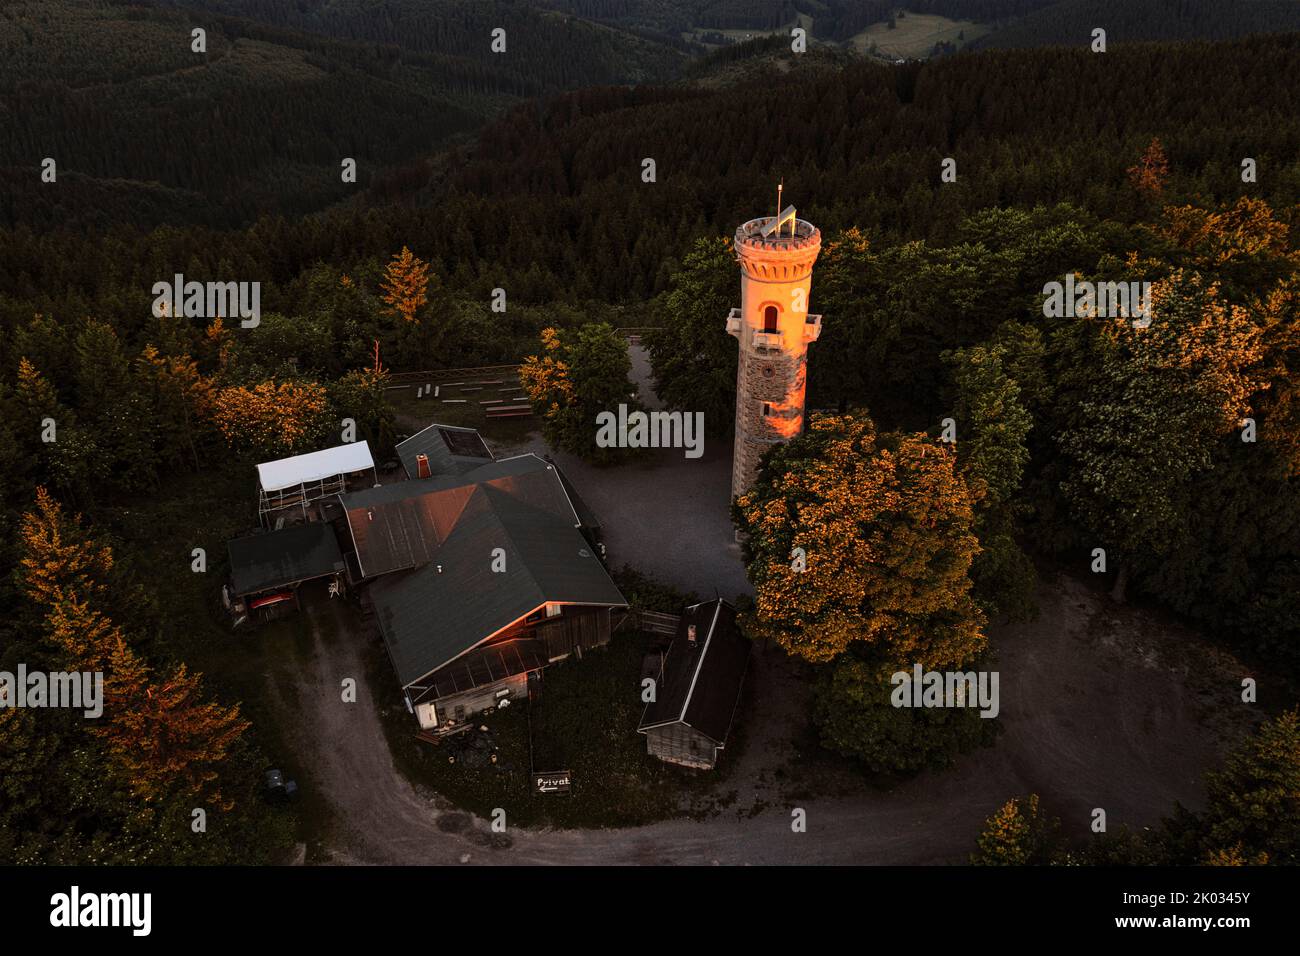 Germania, Turingia, Ilmenau, i raggi del primo mattino illuminano come un riflettore la torre di osservazione sul Kickelhahn, foresta, panoramica, foto aerea Foto Stock